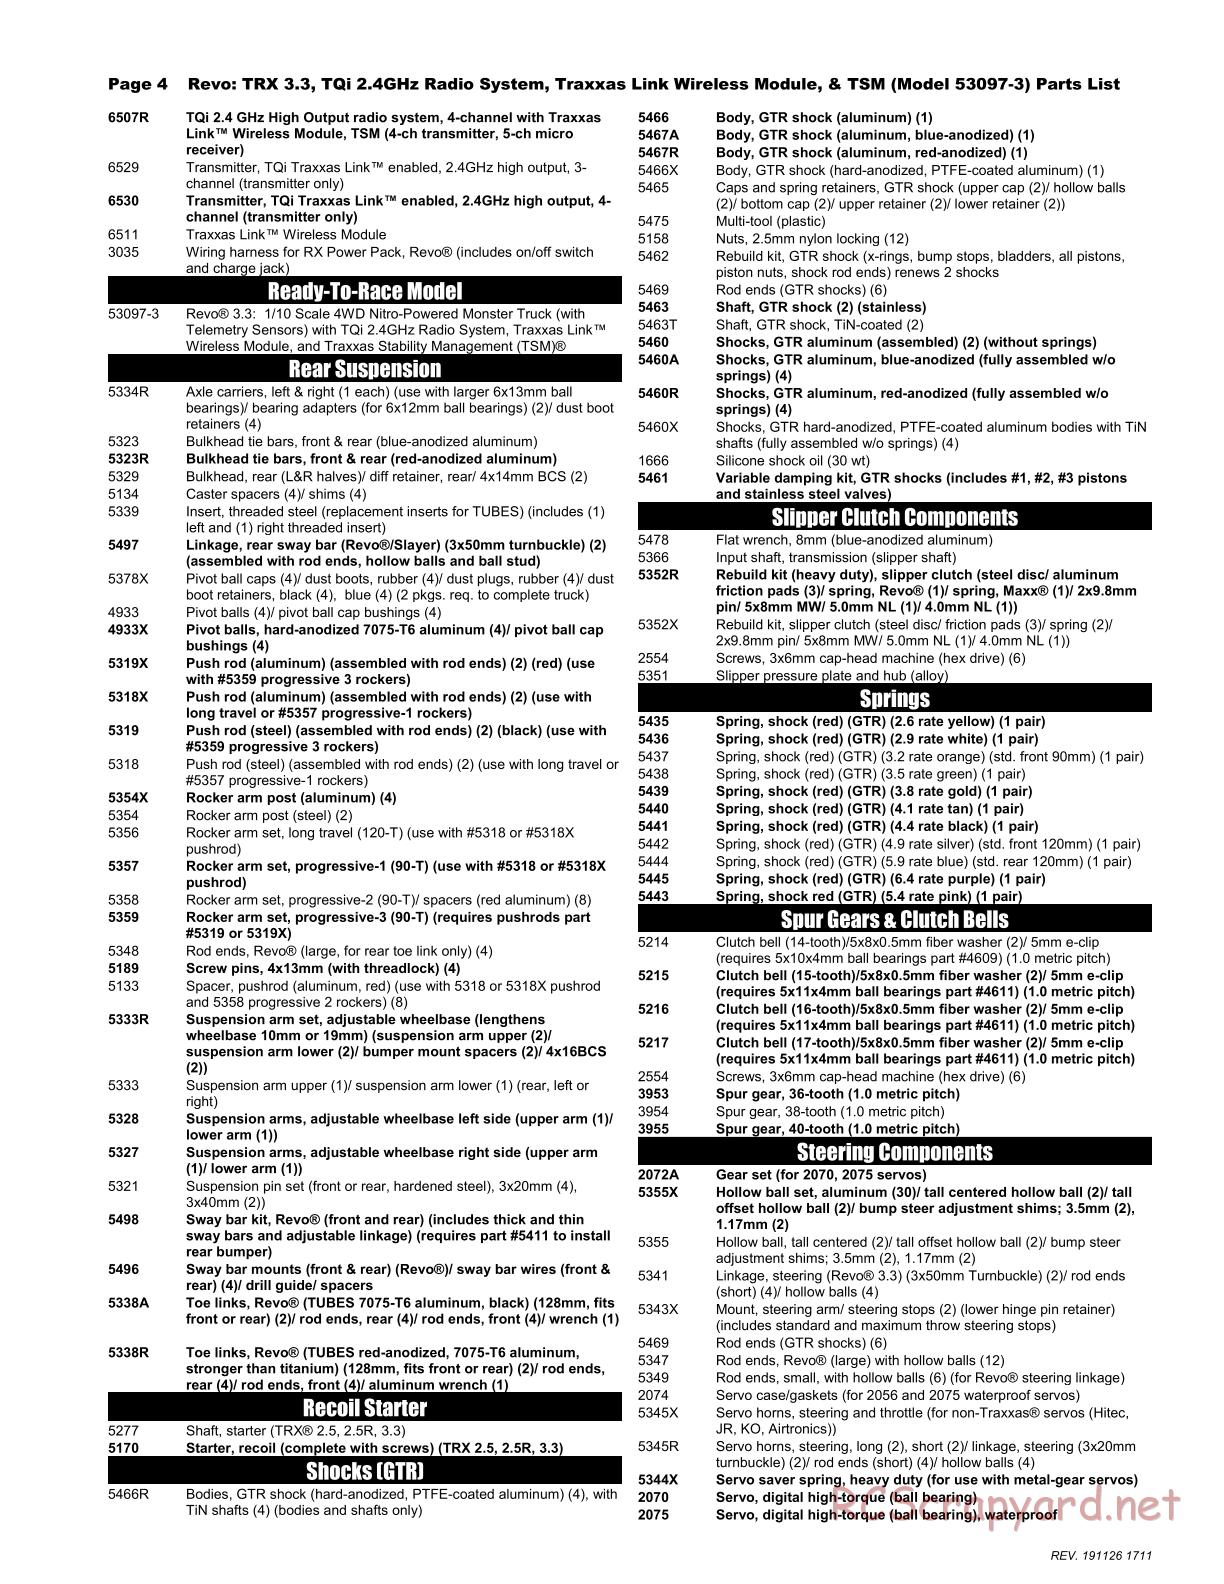 Traxxas - Revo 3.3 TSM - Parts List - Page 4